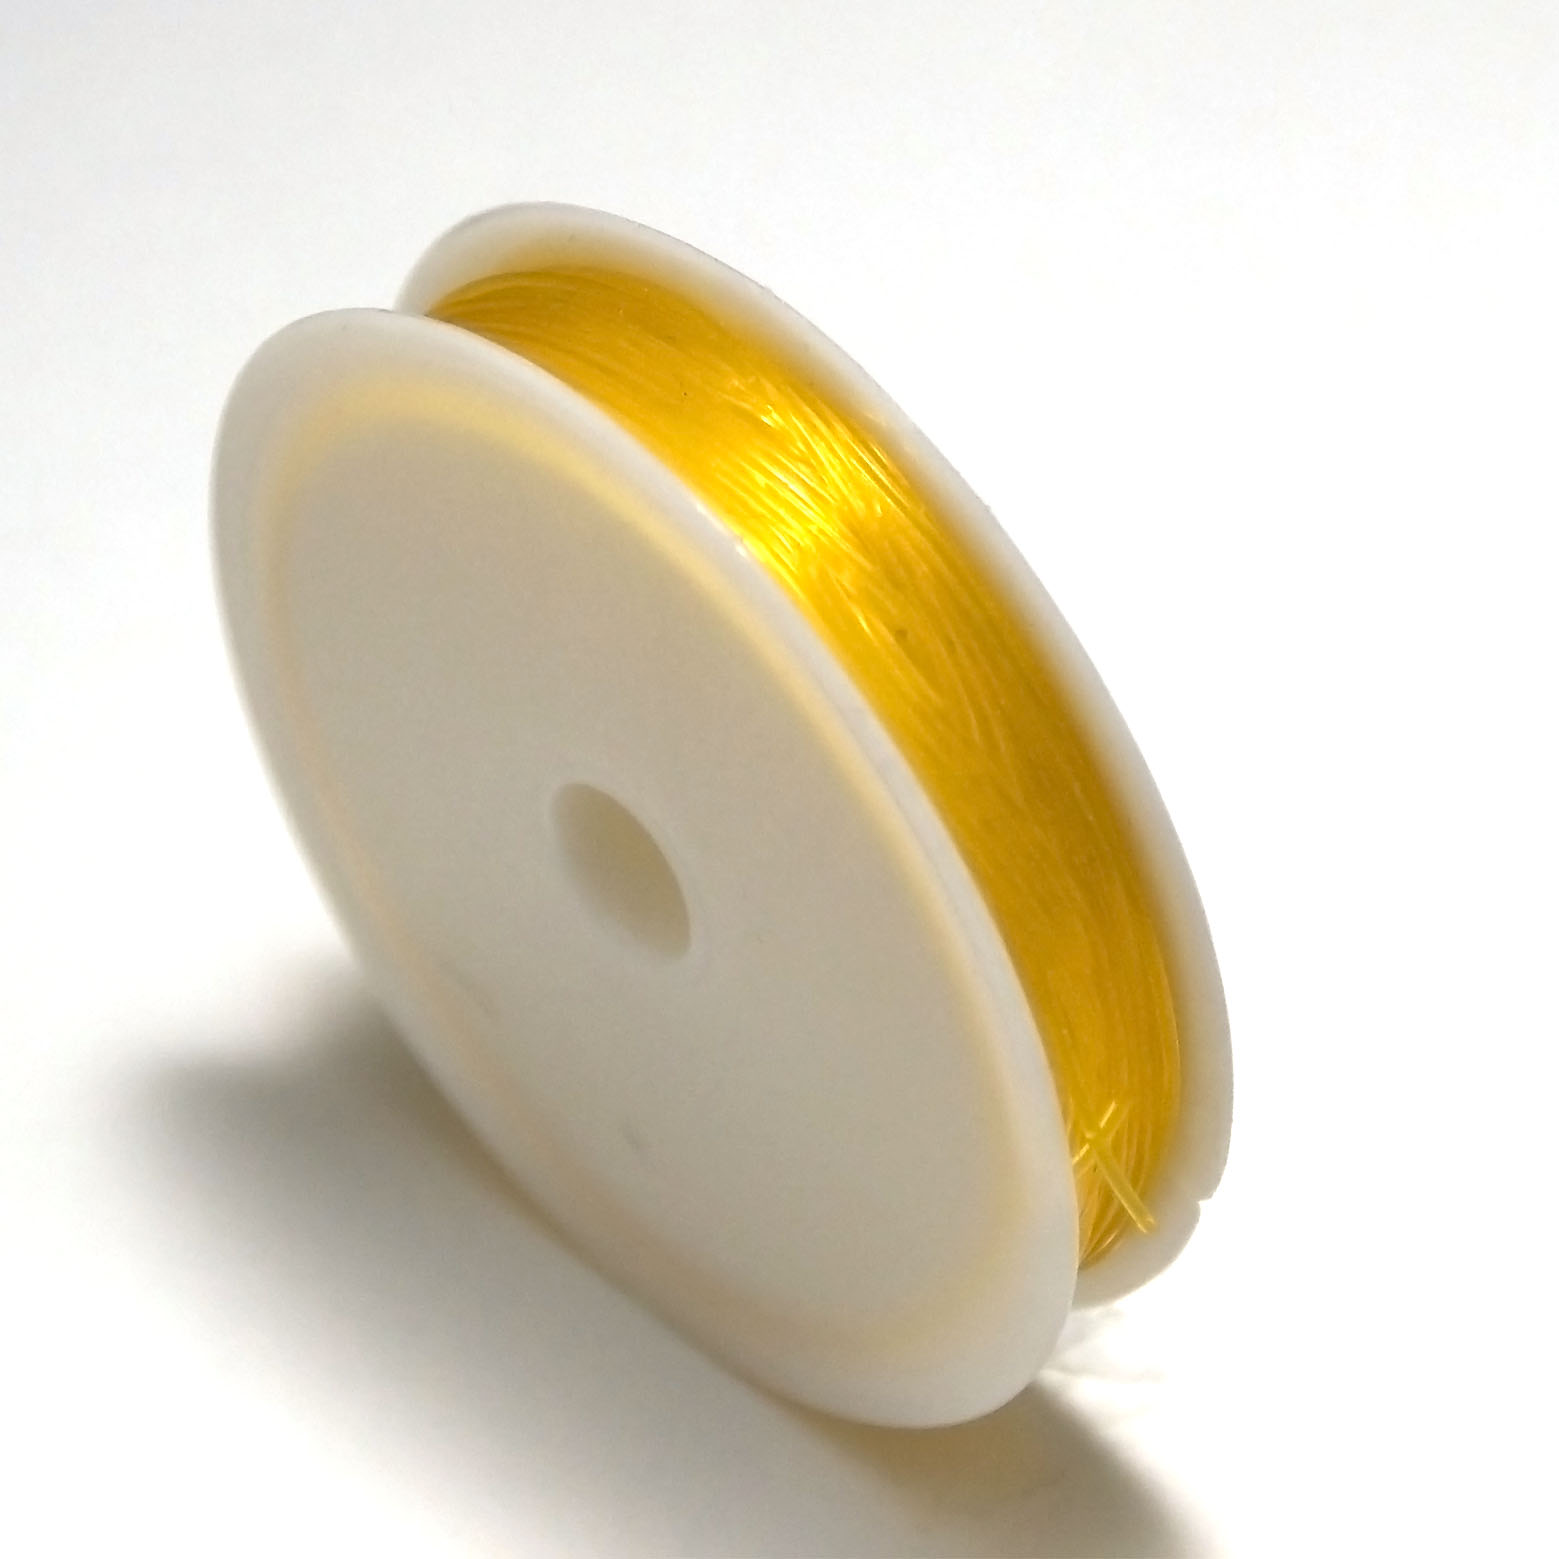 1 bobine de fil élastique (5 m x 0,8 mm),jaune